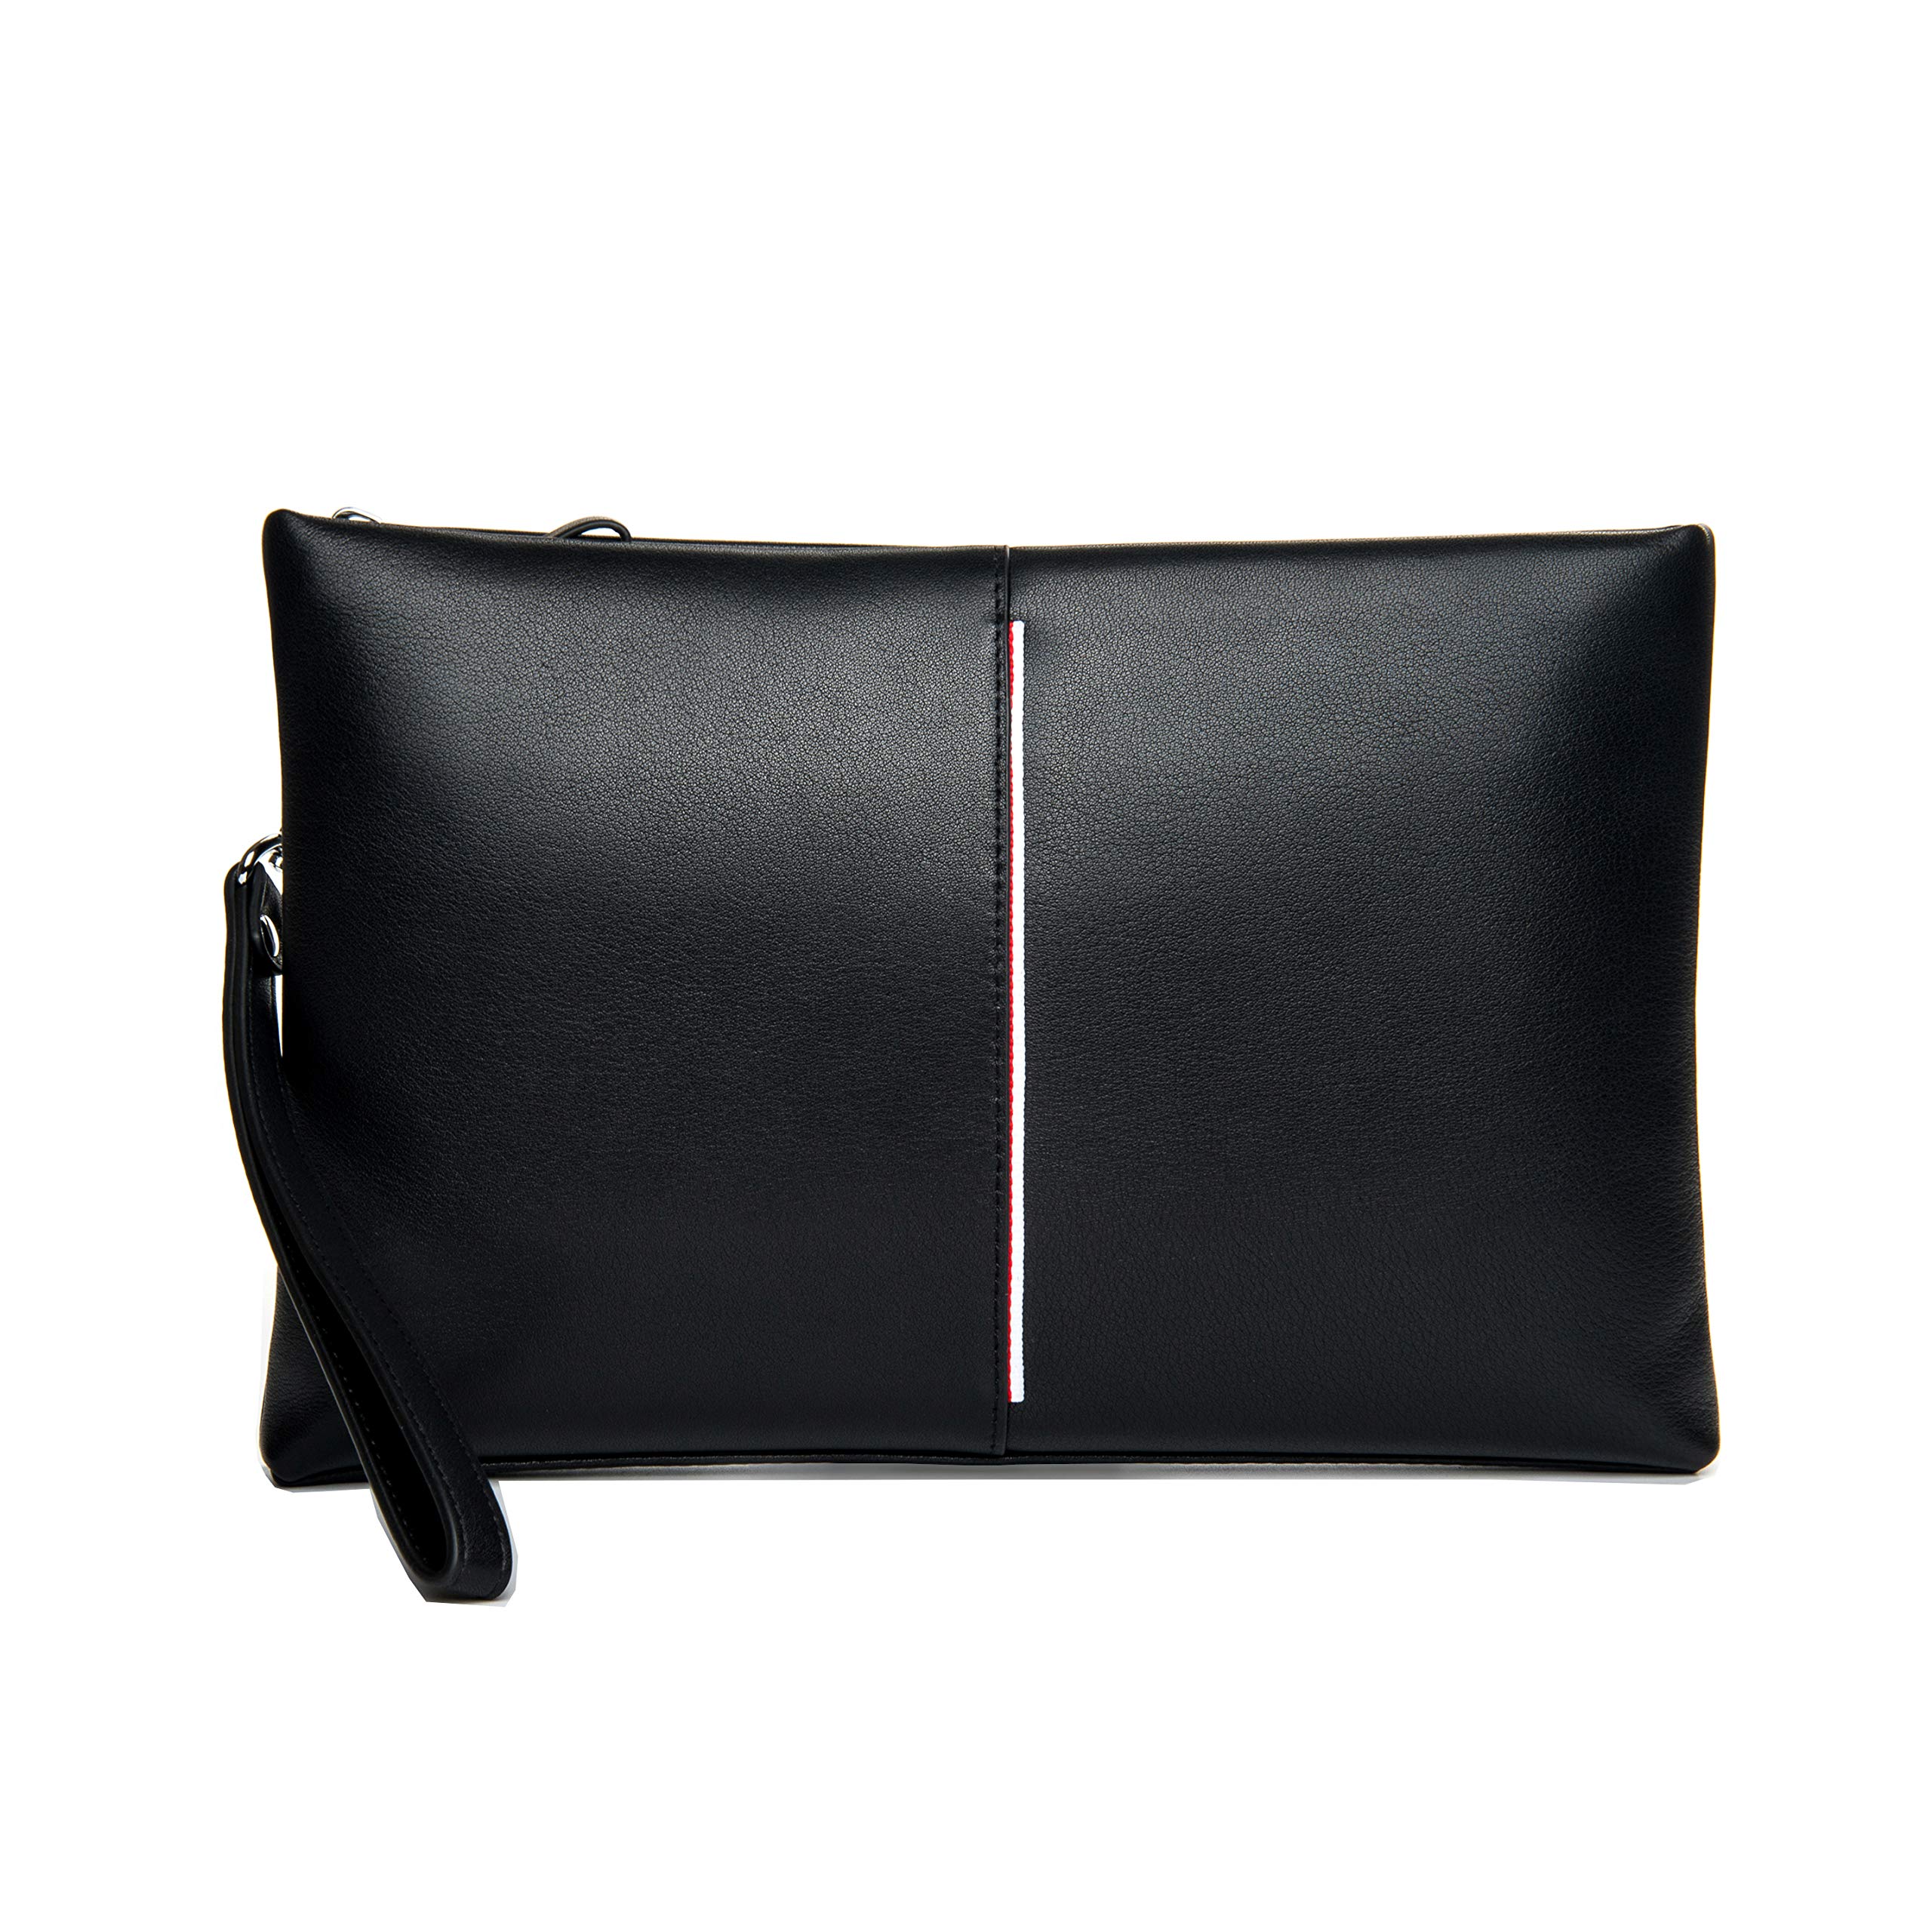 Contacts Genuine Leather Messenger Bag for Men Crossbody Shoulder Bag 7.9